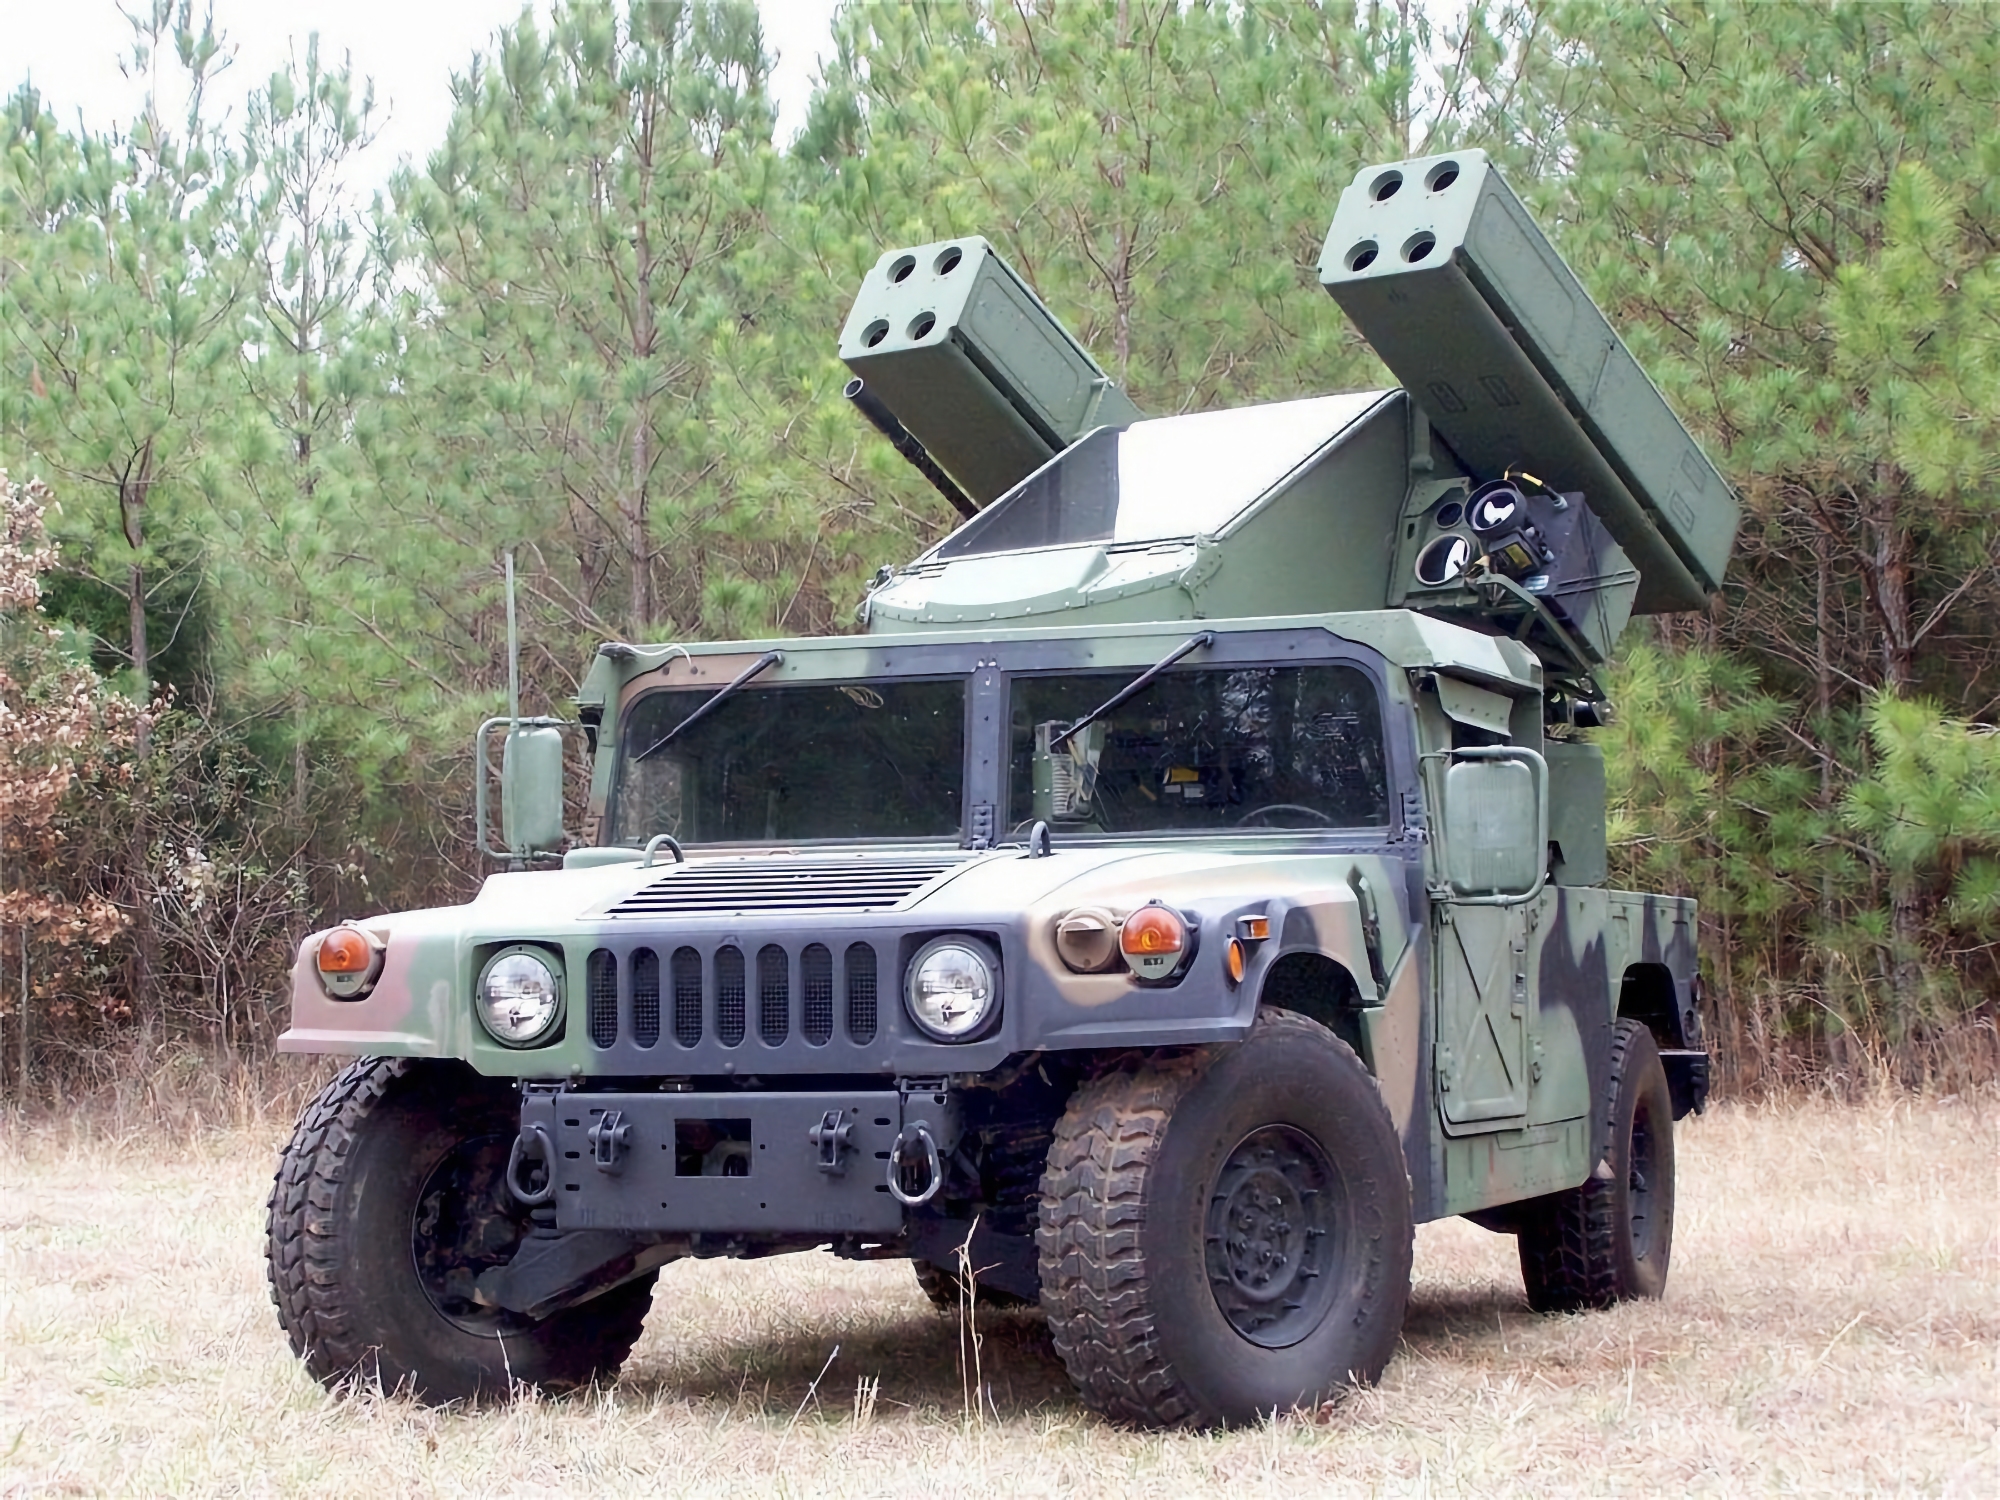 AFU otrzymuje AN/TWQ-1 Avenger SAM z pociskami Stinger, zdolnymi do niszczenia celów powietrznych w odległości do 5,5 km.